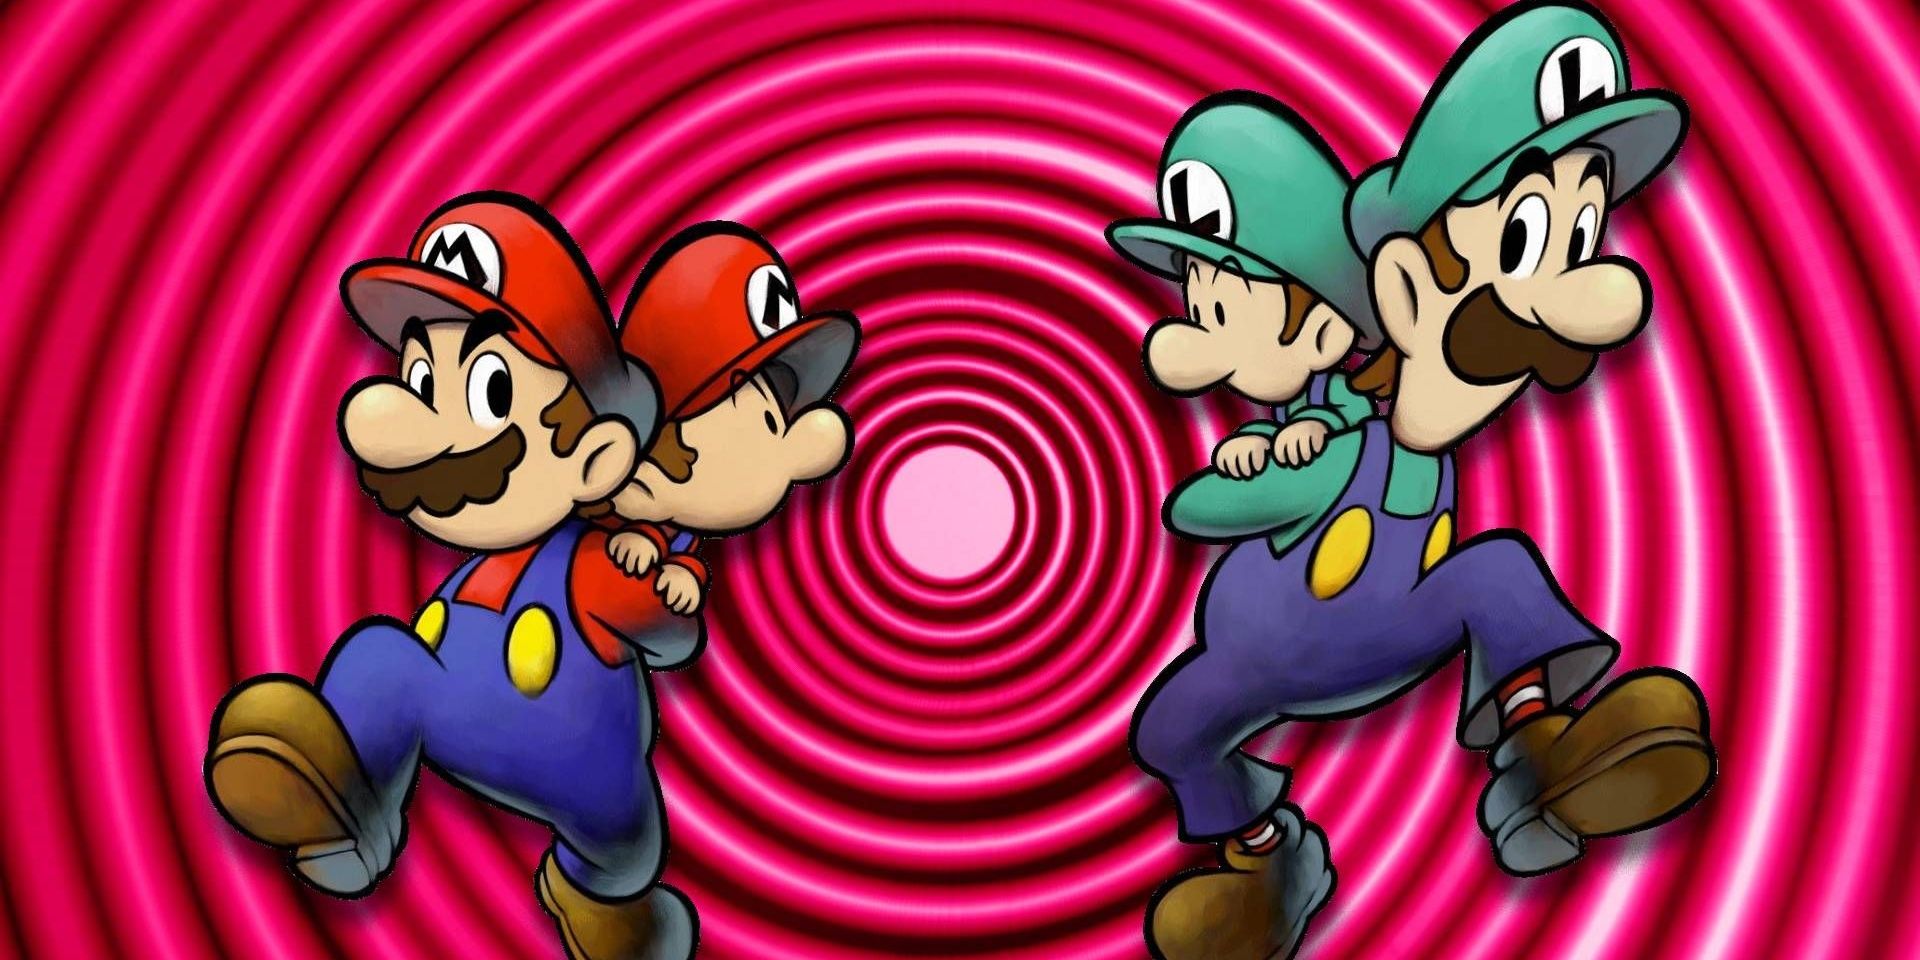 Mario & Luigi Bermitra di Time-1